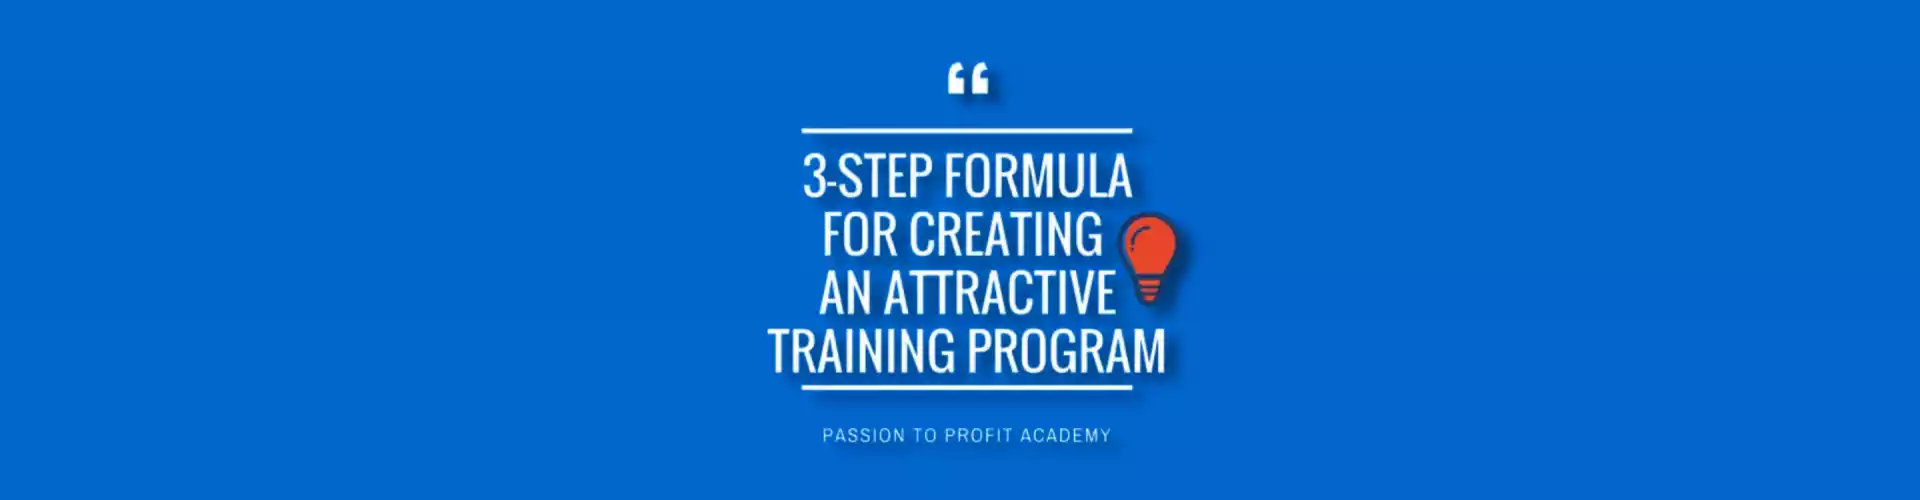 Fórmula de 3 pasos para crear un programa de capacitación atractivo - Multilingüe